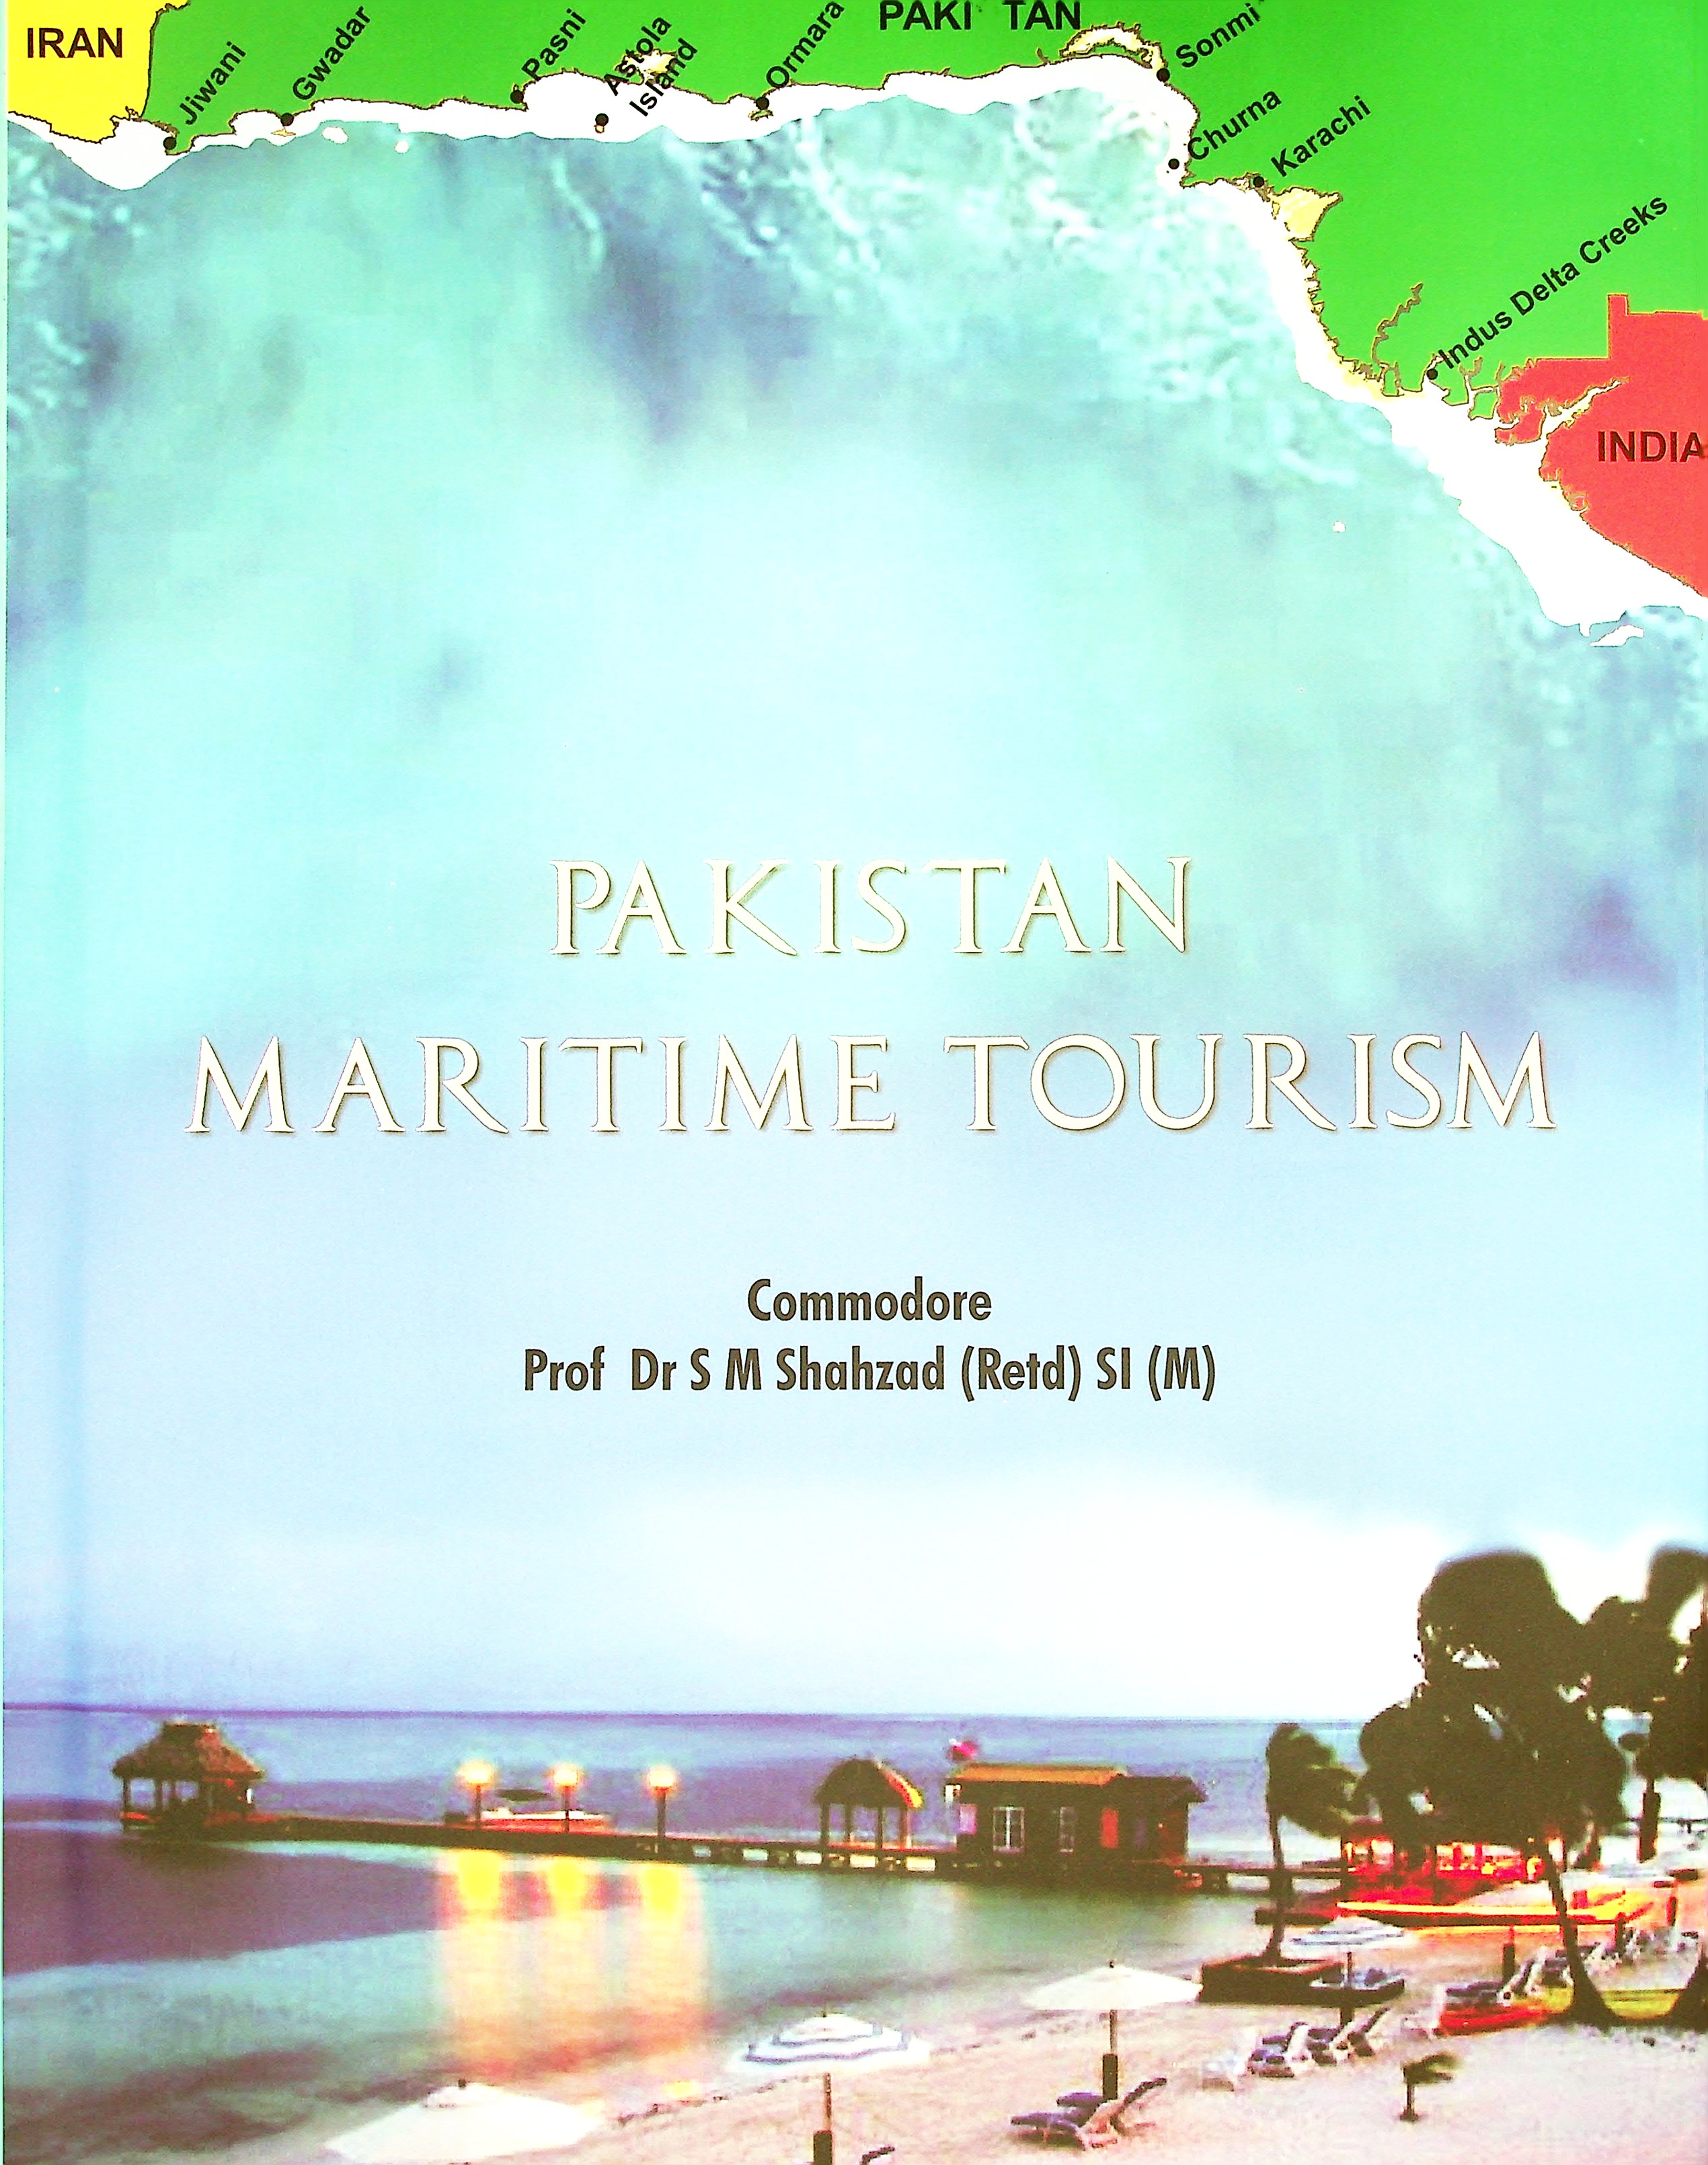 Pakistan maritime tourism